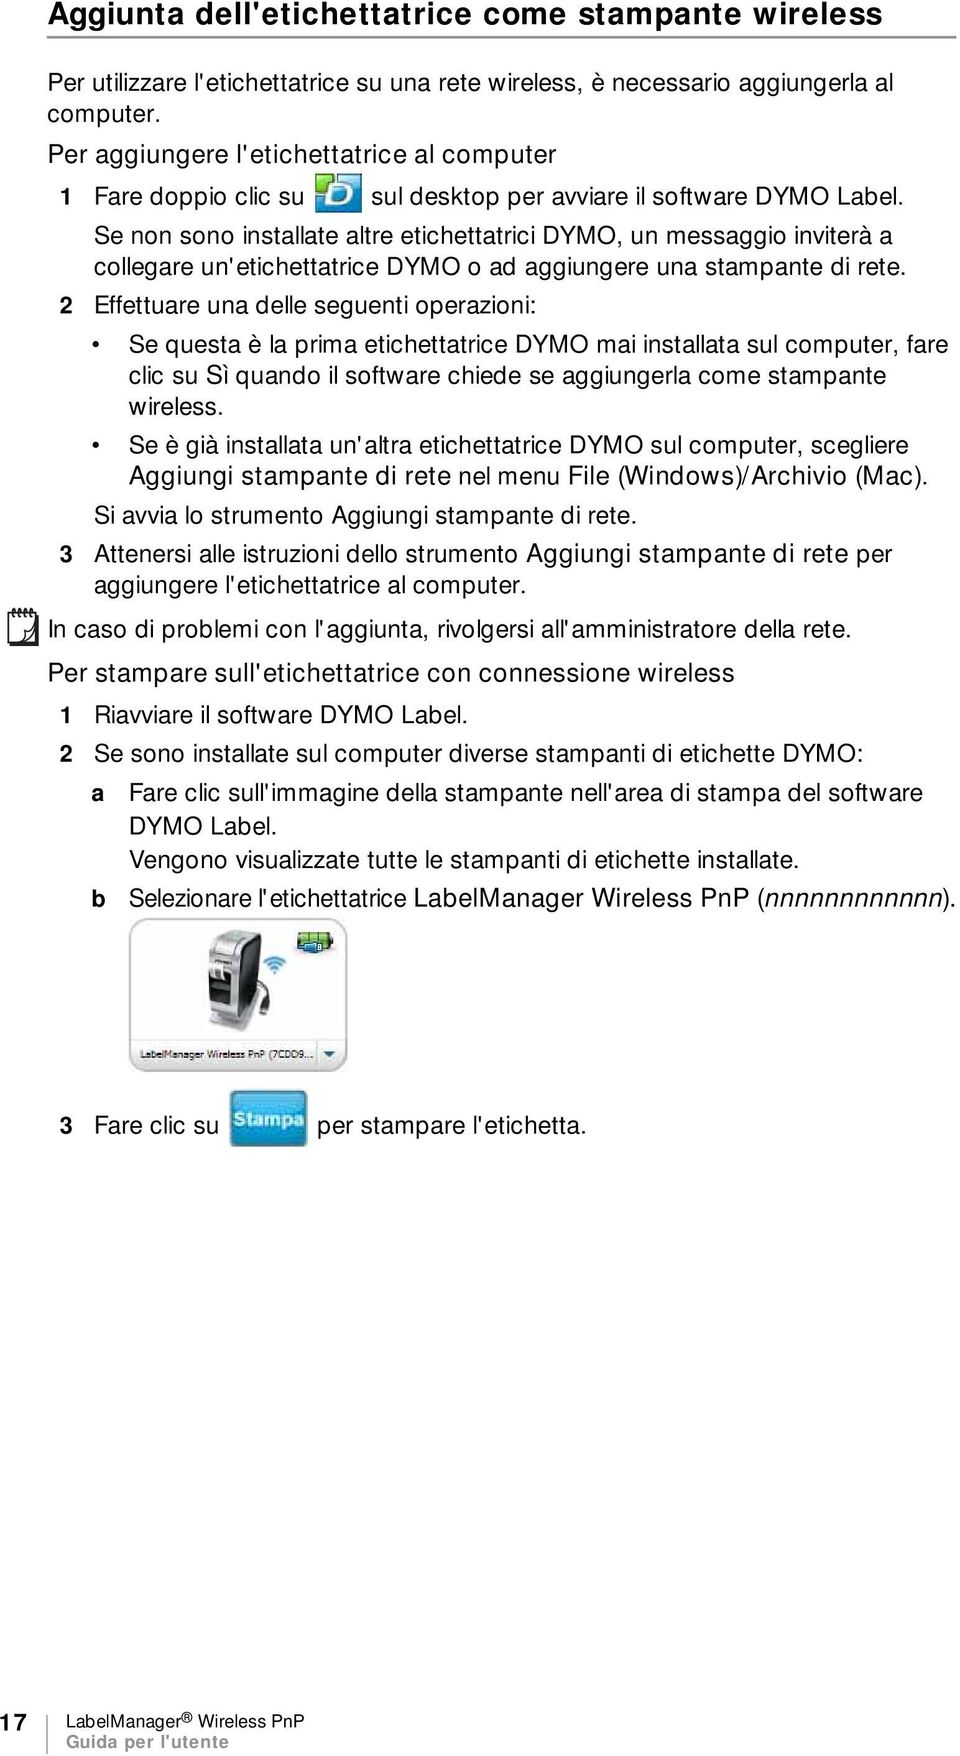 Se non sono installate altre etichettatrici DYMO, un messaggio inviterà a collegare un'etichettatrice DYMO o ad aggiungere una stampante di rete.